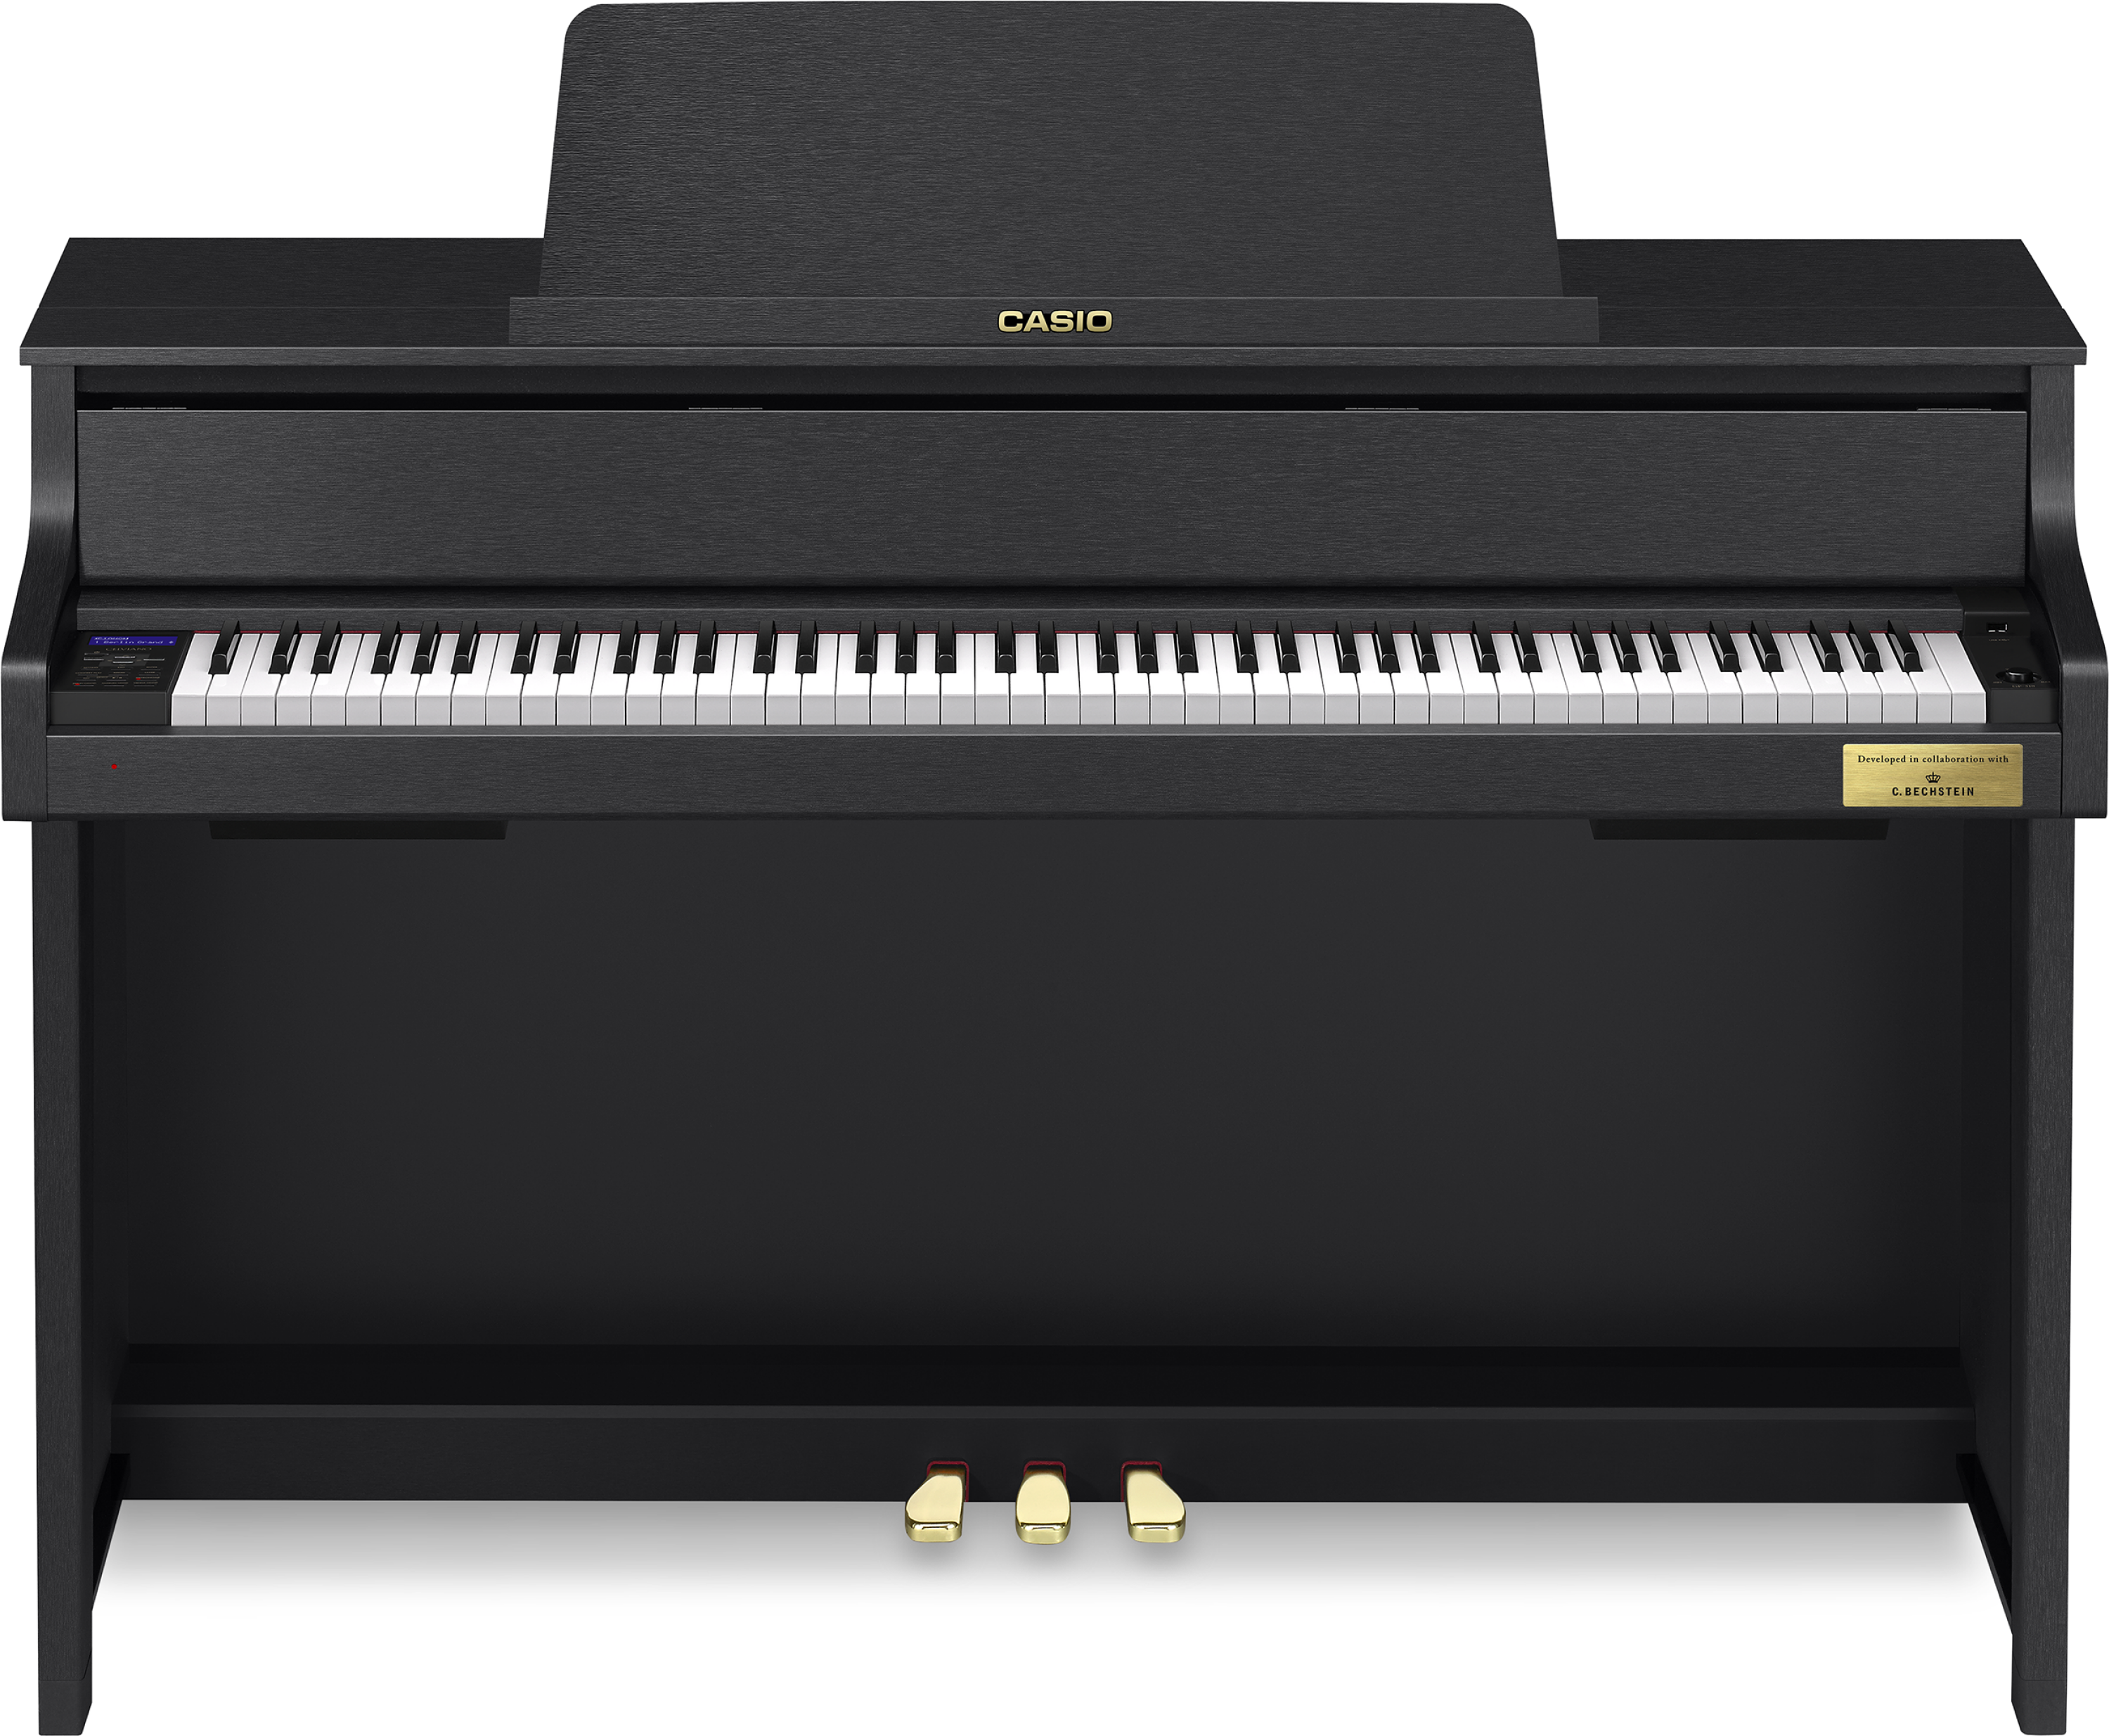 Piano Digital Casio Celviano Grand Hybrid GP-310 - Preto - Made in Brazil